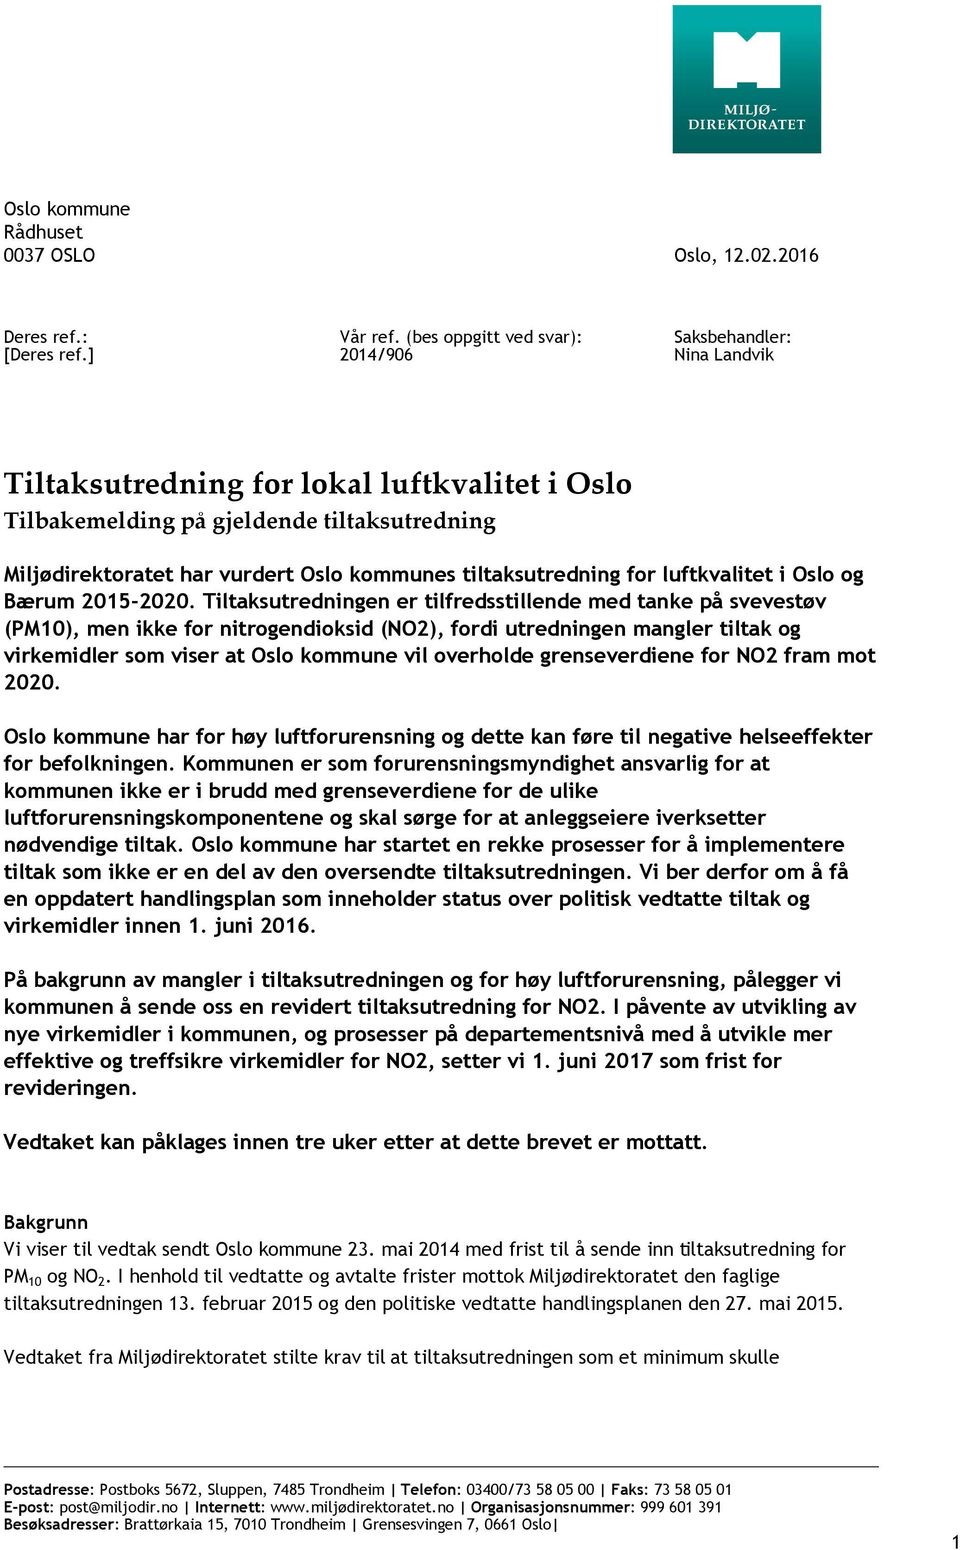 tiltaksutredning for luftkvalitet i Oslo og Bærum 2015-2020.